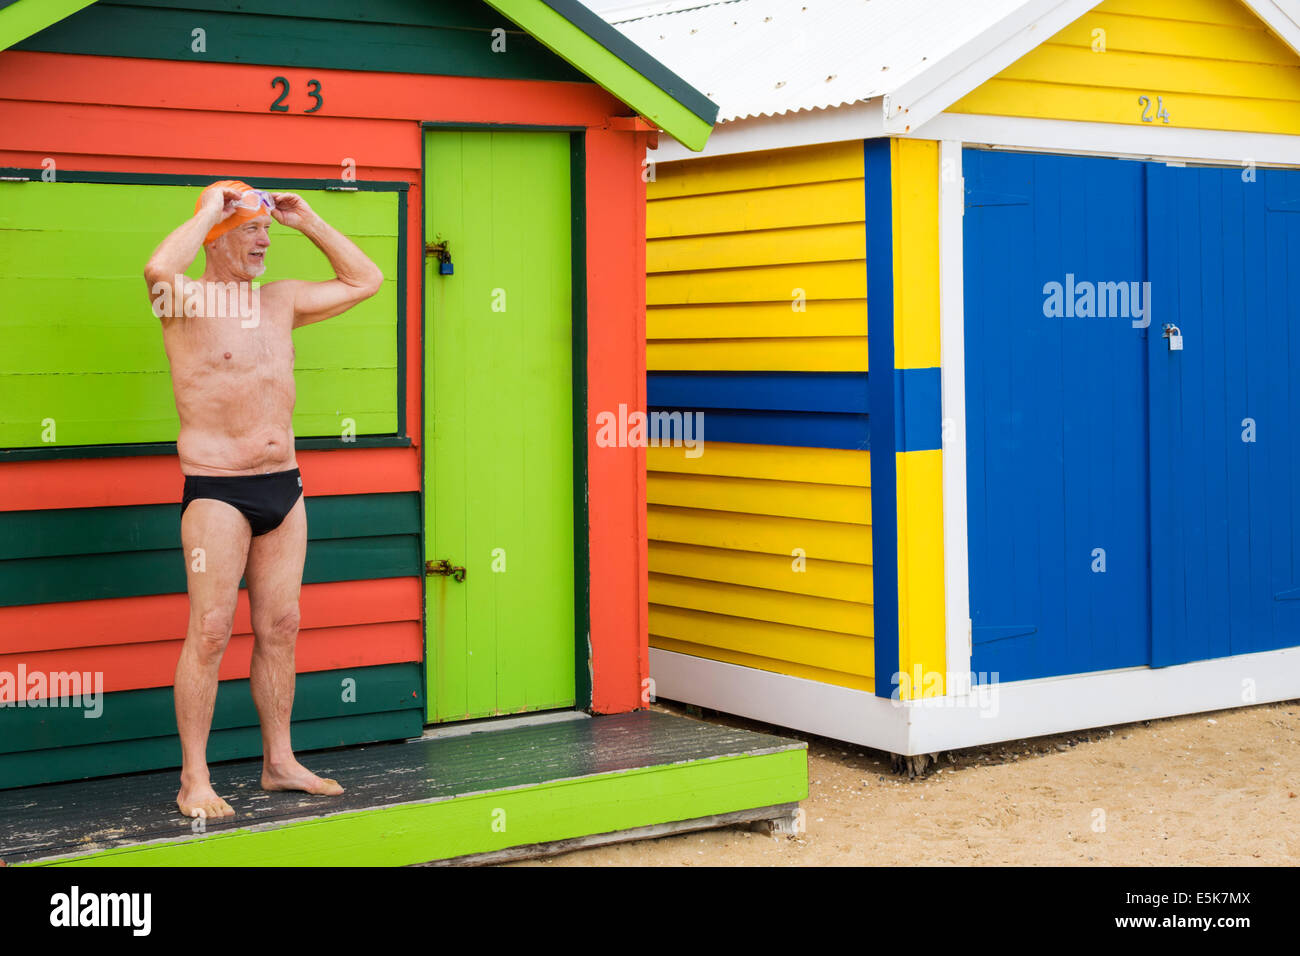 Melbourne Australien, Brighton Beach, Badeboxen, Hütten, Hütten, farbenfroh, Männer, Männer, Schwimmer, AU140322009 Stockfoto